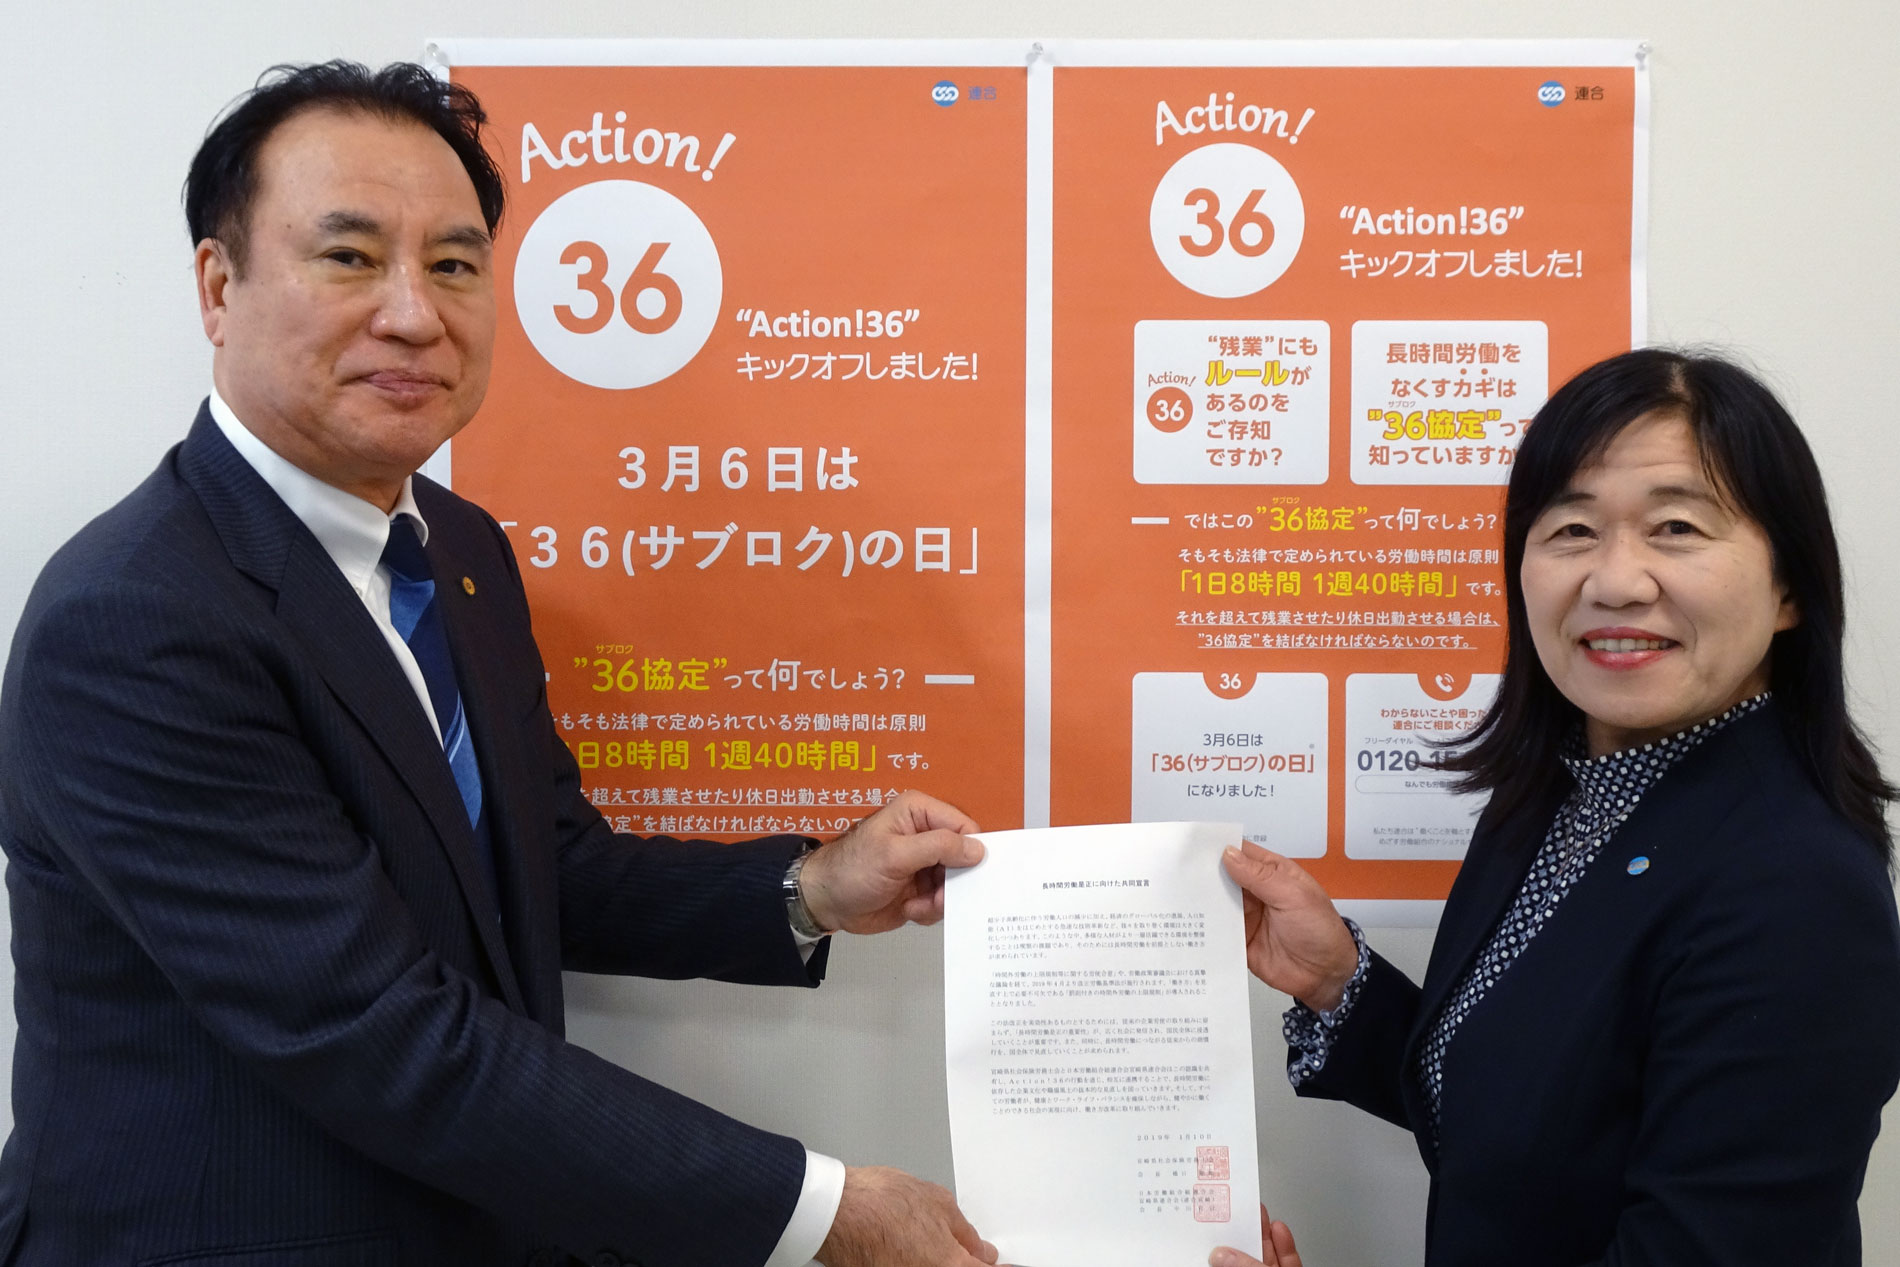 宮崎県社会保険労務士会との 長時間労働是正に向けた共同宣言